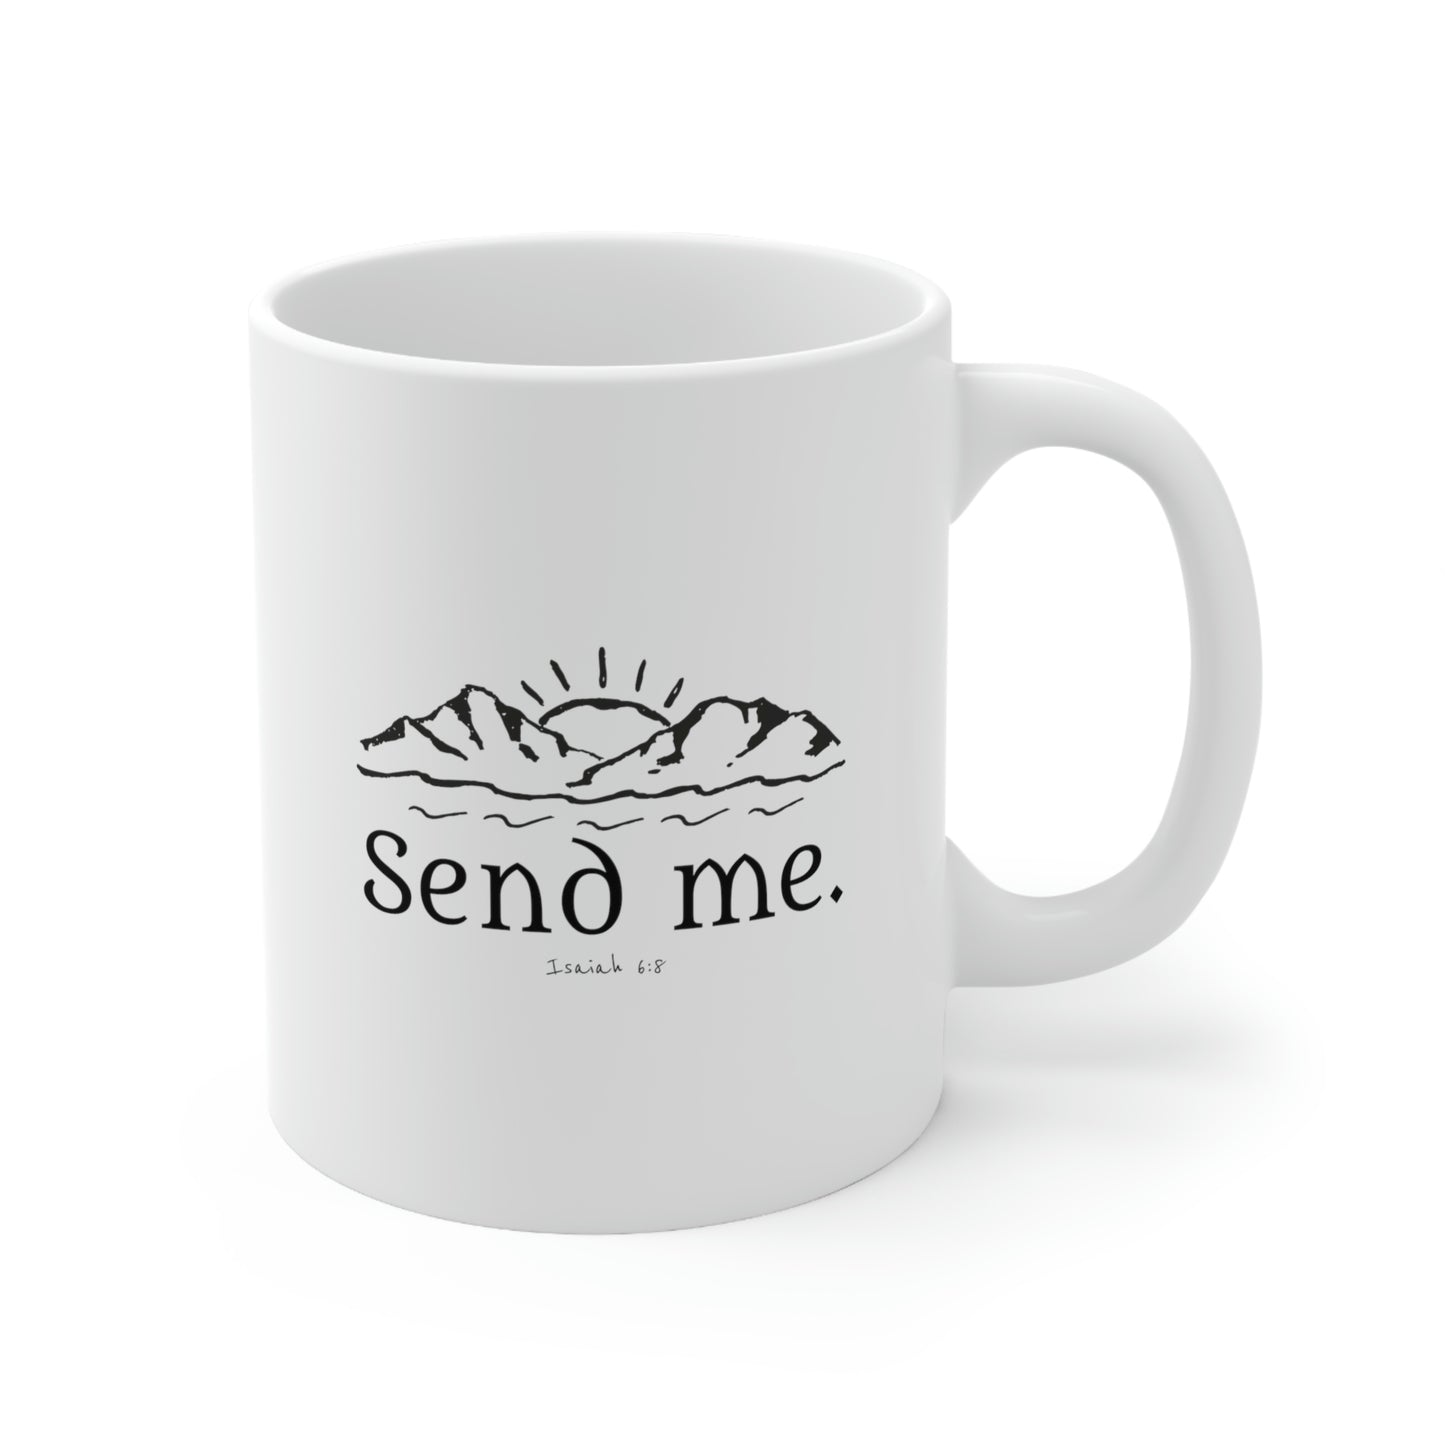 Send Me, Ceramic Mug 11oz, Missionary